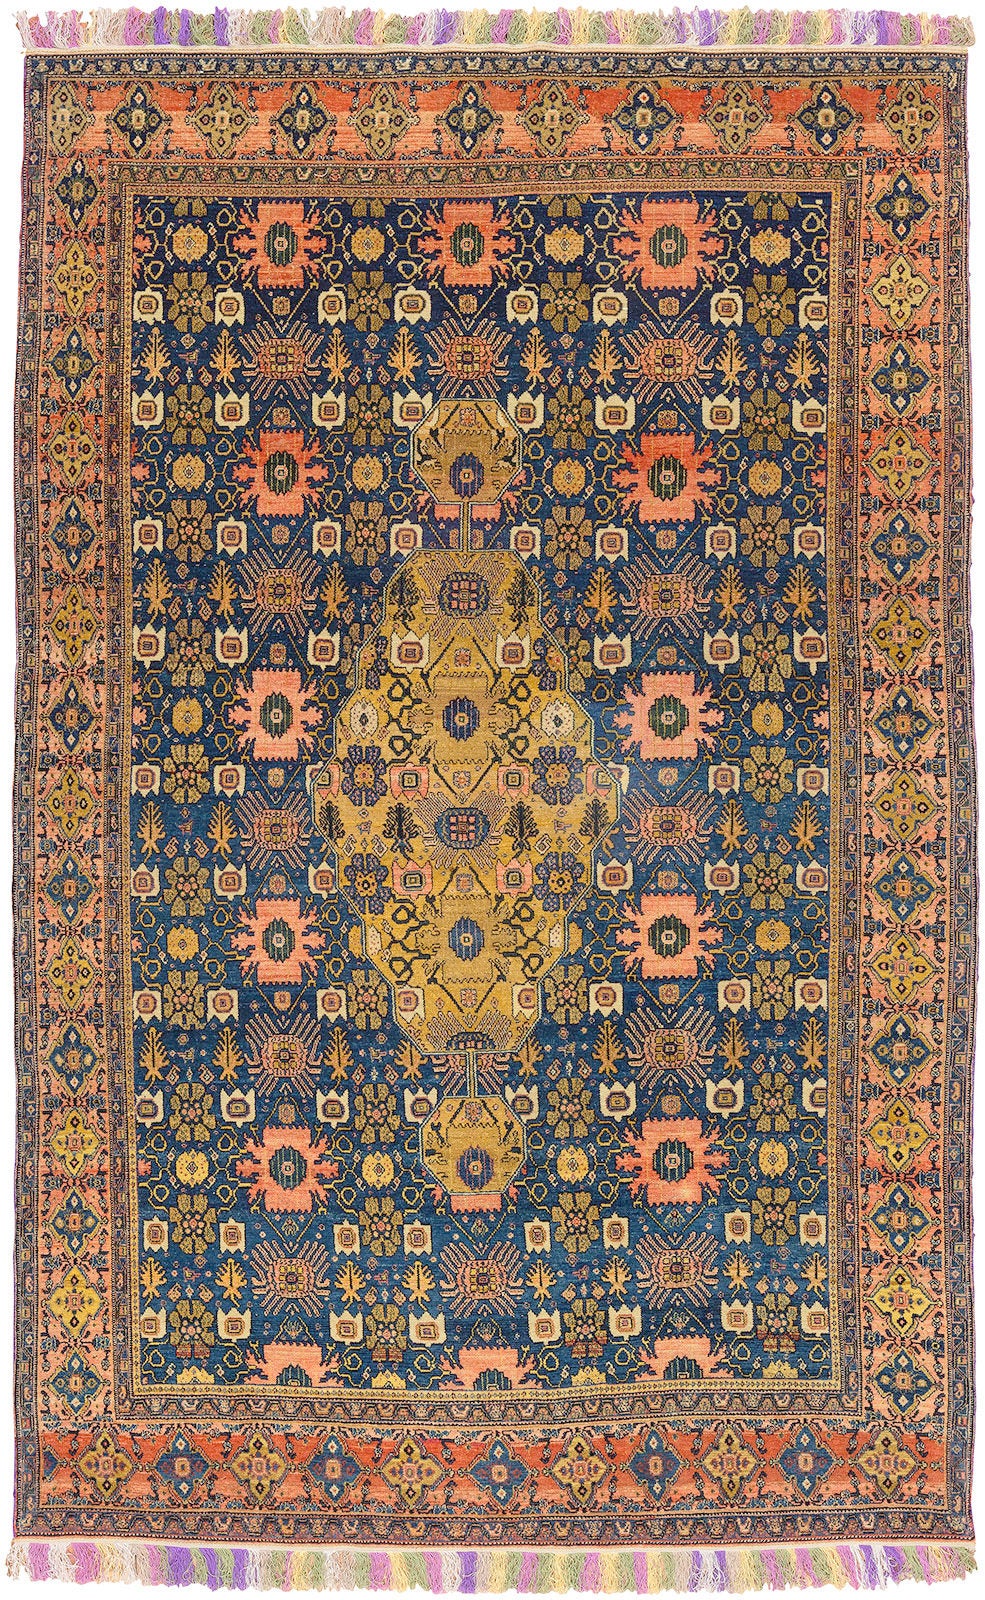 Spektakuläre Sammler-Level fein gewebt frühen 20. Jahrhundert persischen Senneh Teppich. Die Weberin fügte mehrfarbige Fransen hinzu, die wir noch nie gesehen haben. 

4'5'' x 6'11''

Antike Senneh-Teppiche gehören zu den charakteristischsten